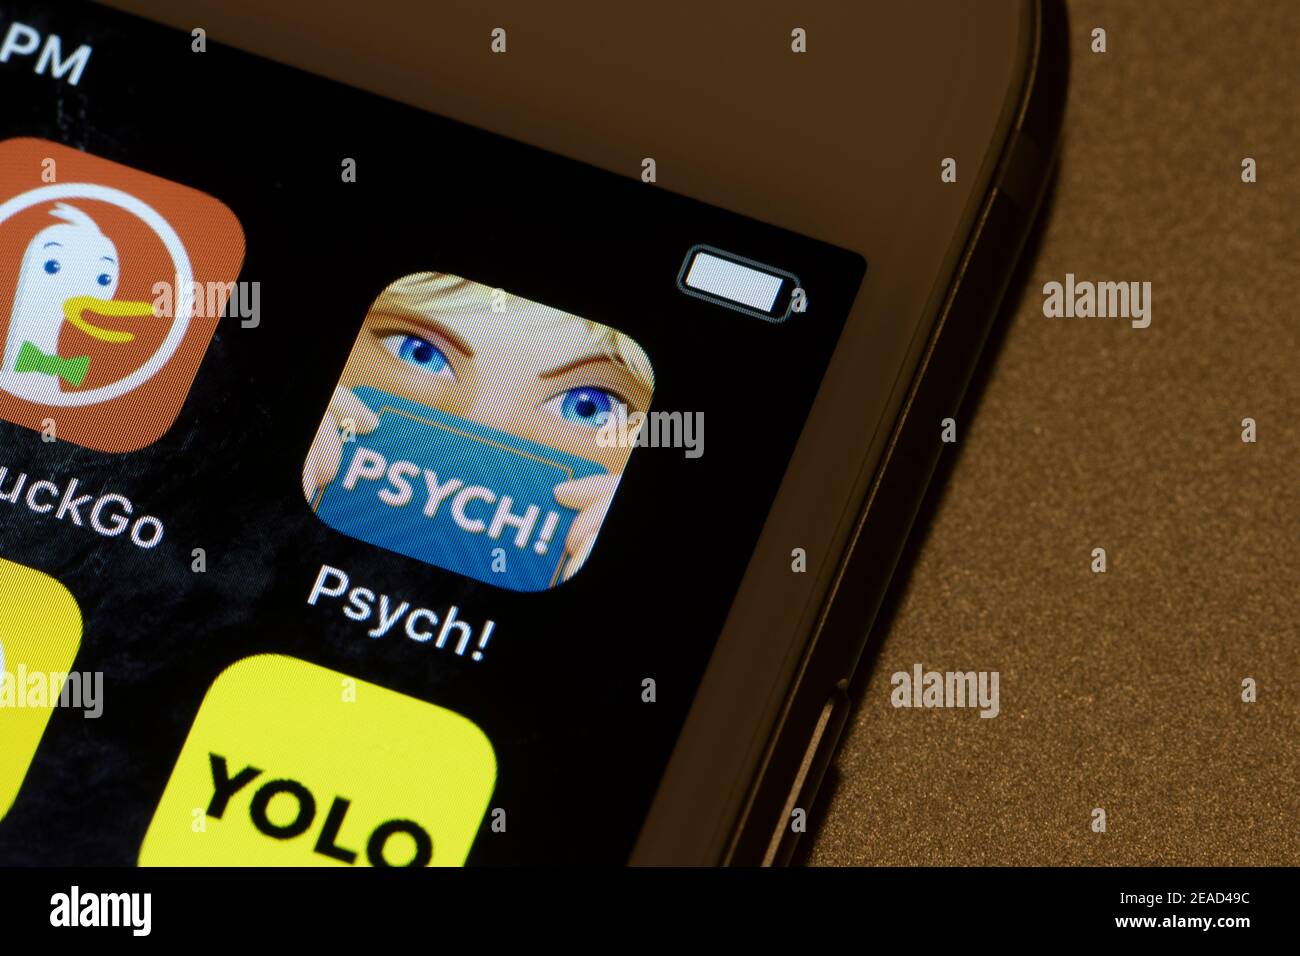 Das Psych App-Symbol ist auf einem iPhone am 8. Februar 2021 zu sehen. Psych ist das perfekte Spiel für Sie literarische Genies mit unglaublich cleveren Antworten zu kommen. Stockfoto